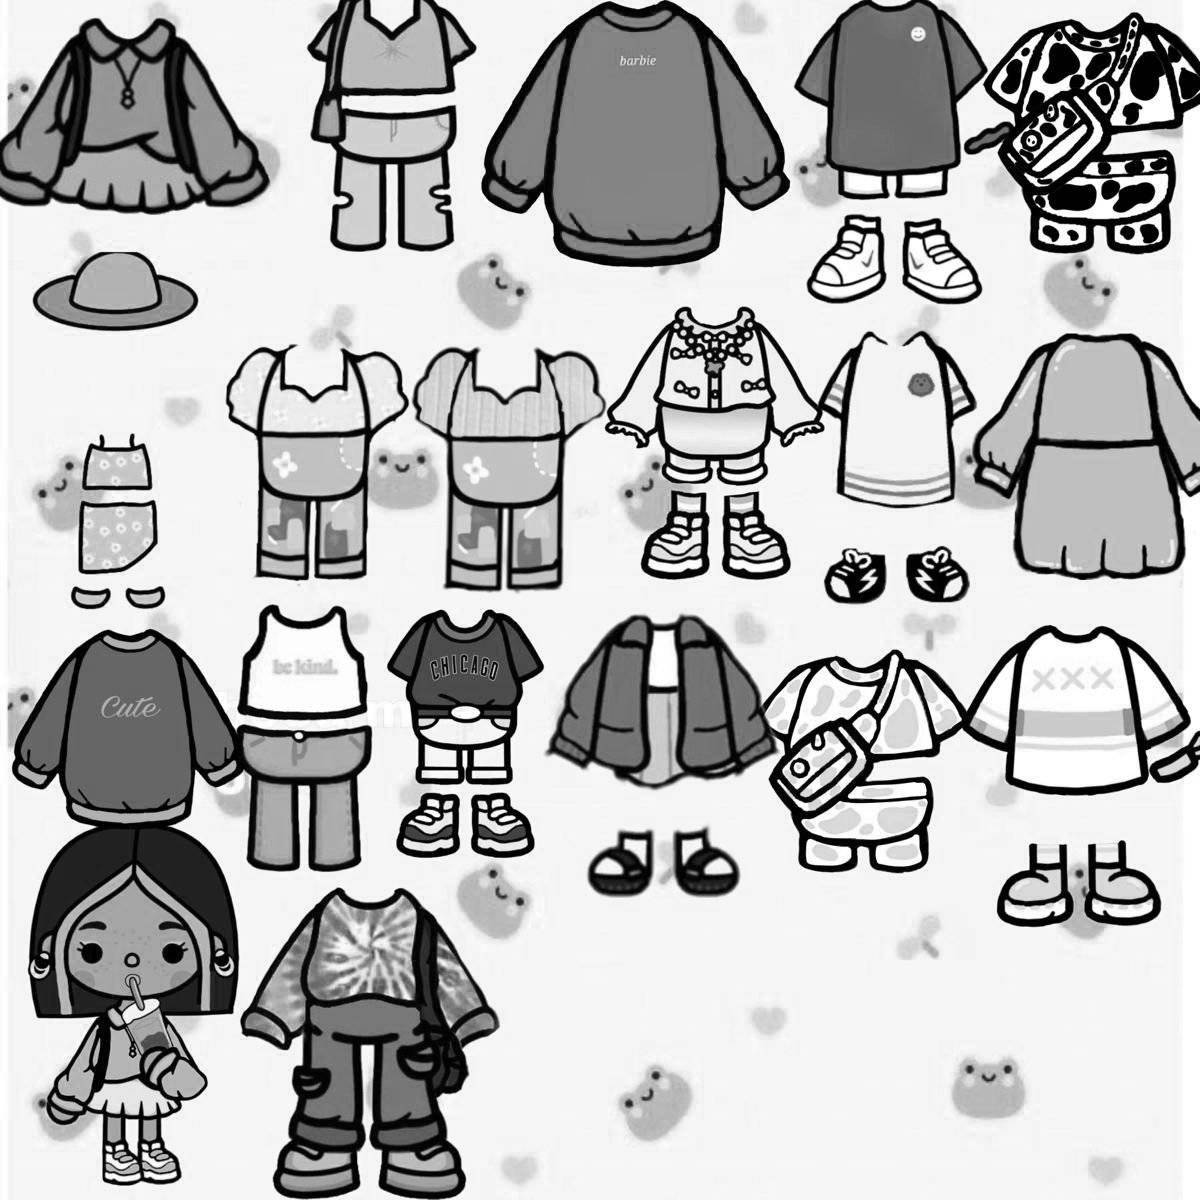 Small toka characters